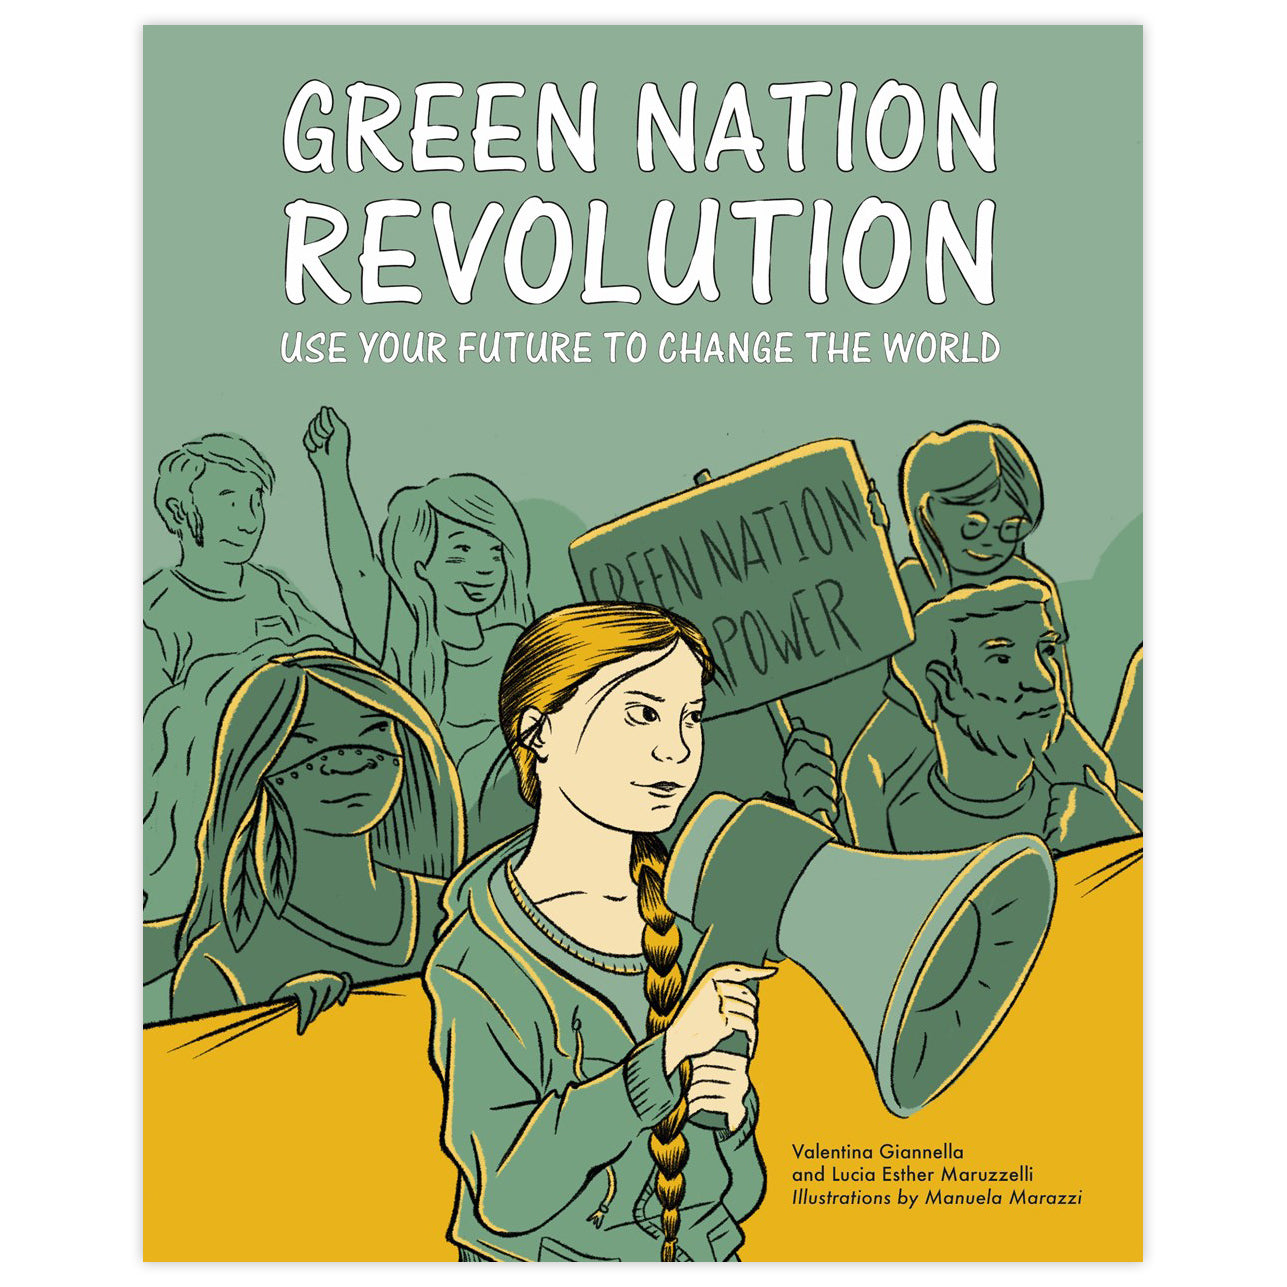 Revolución de la Nación Verde